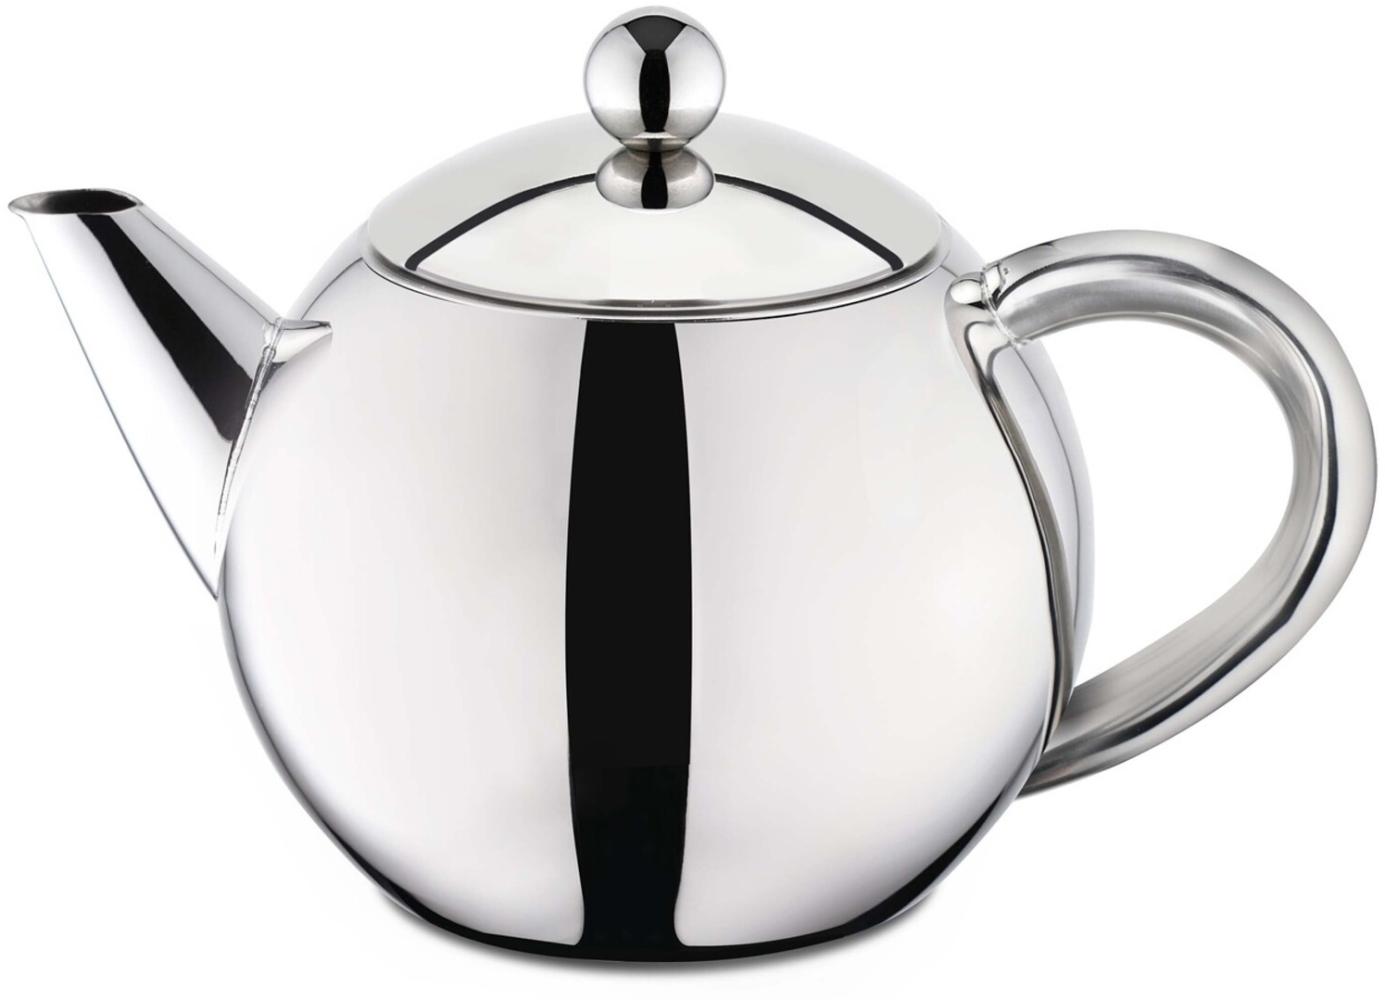 Edelstahl Teekanne 1,5 Liter mit Teefilter 17013 Bild 1